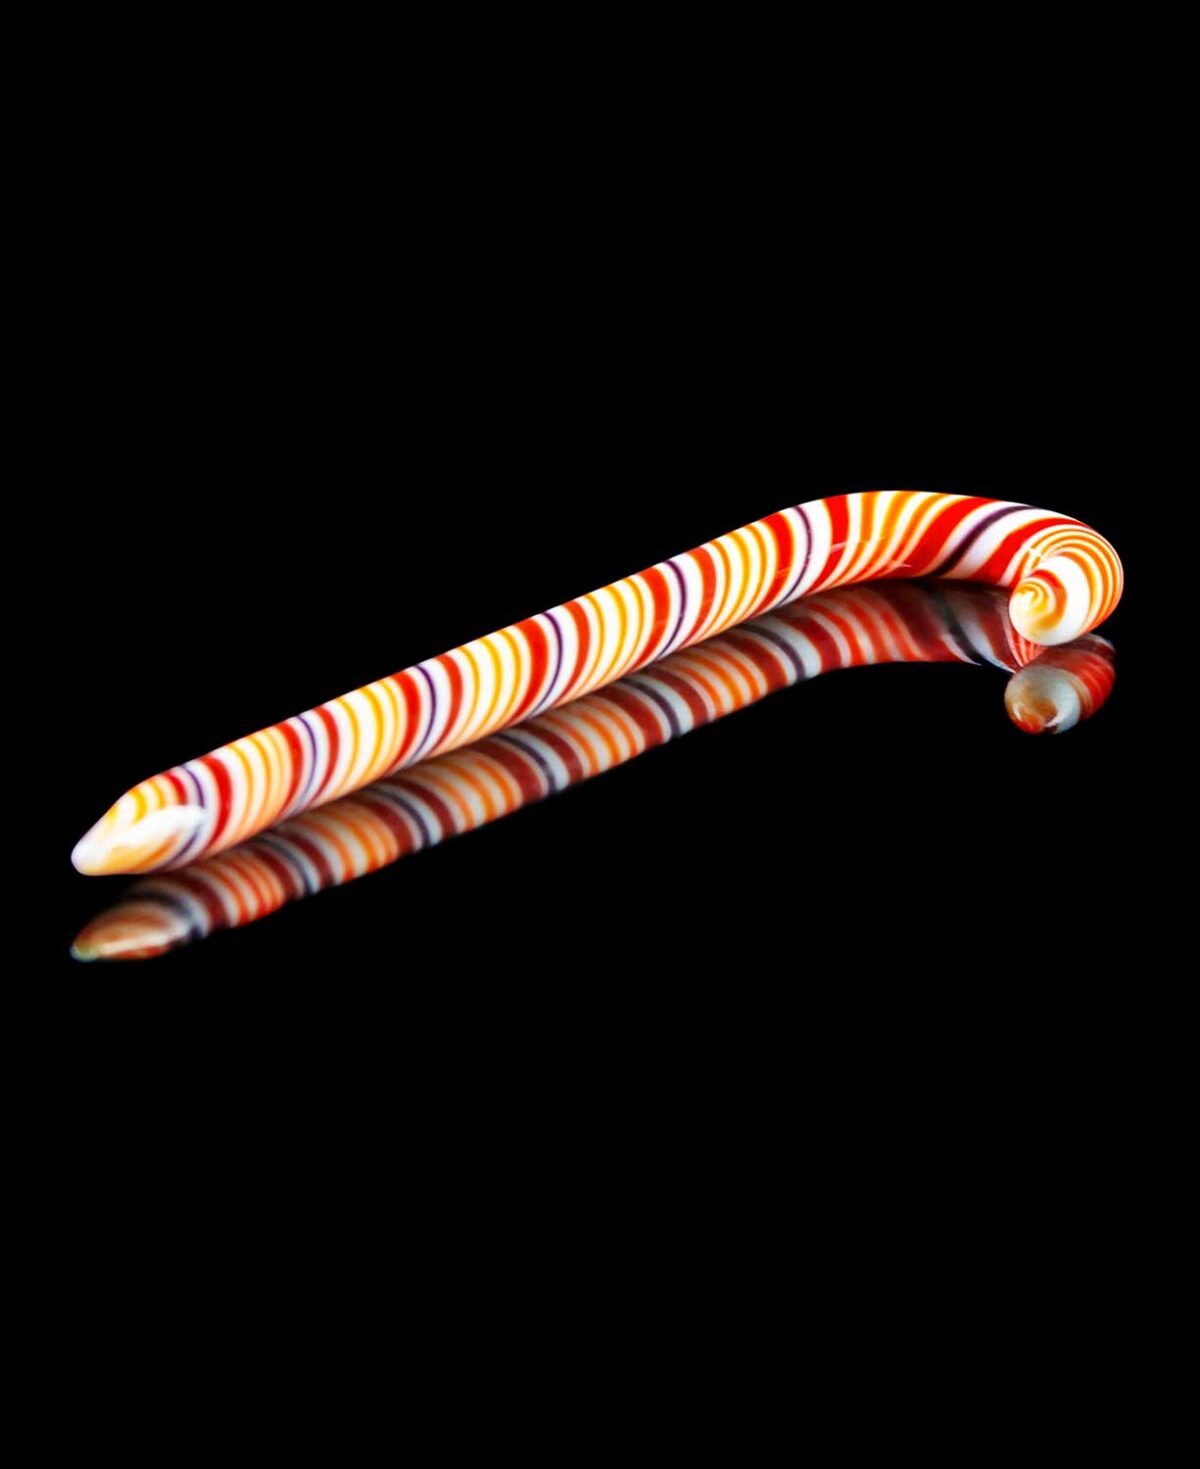 glass dab tool shaped like a candy cane